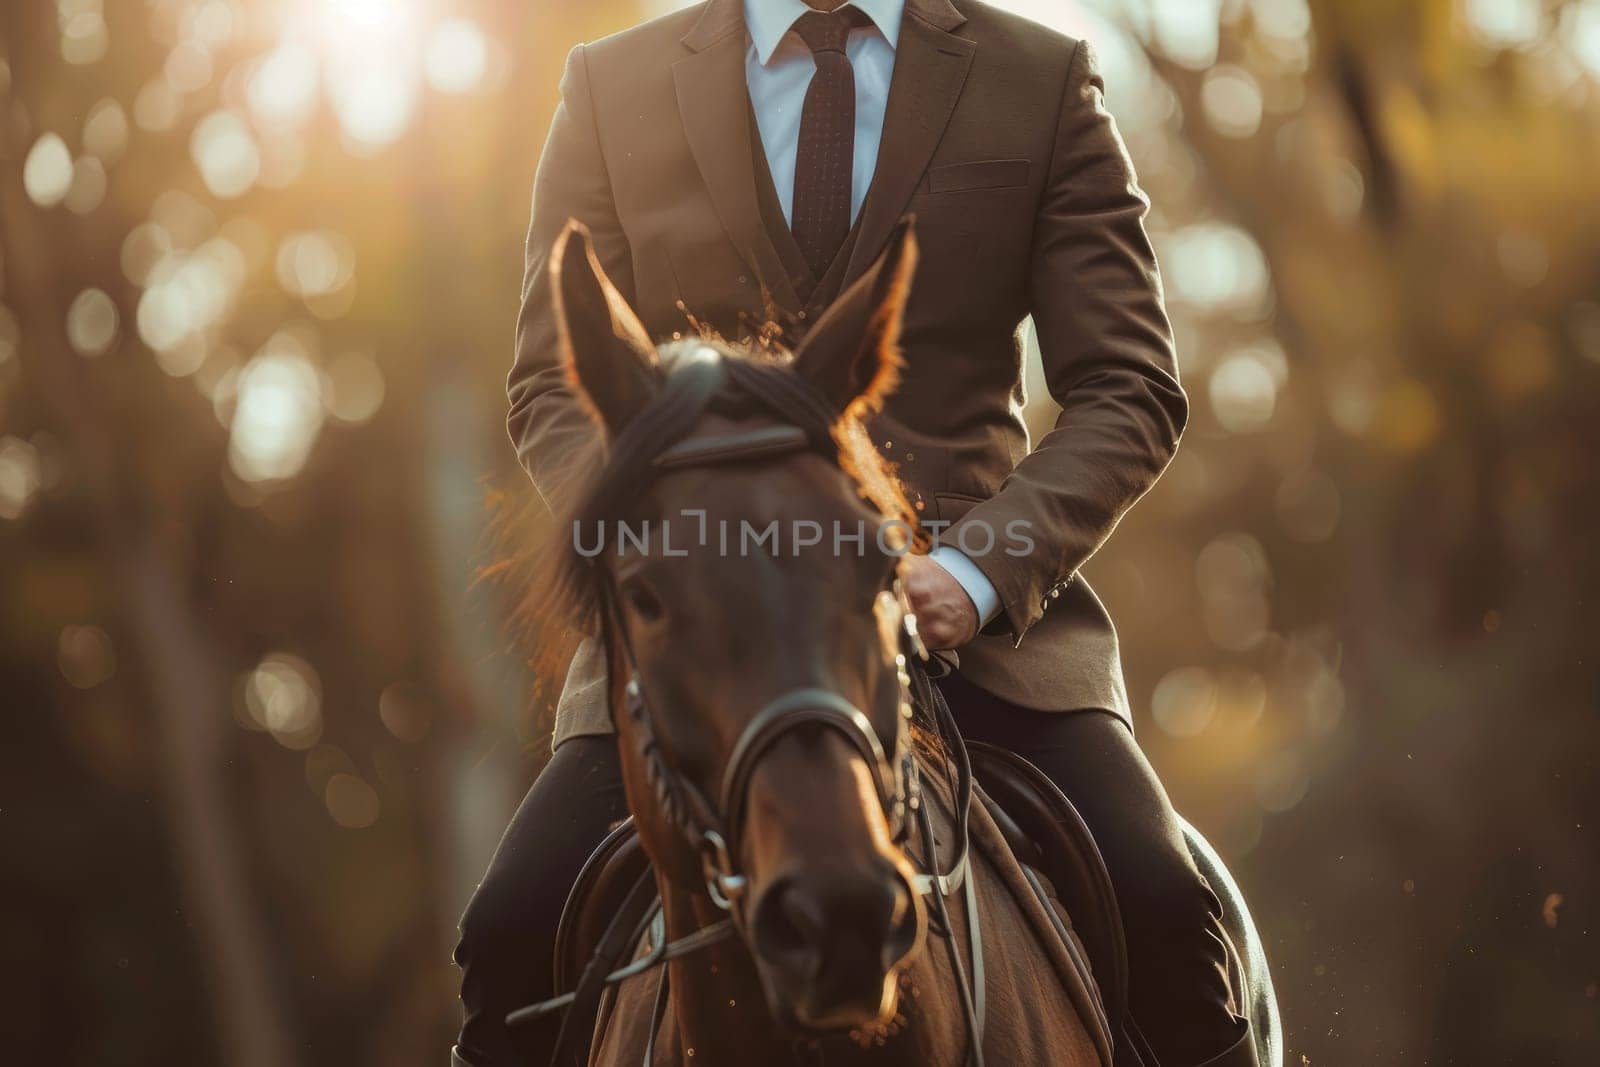 Businessman in suit on horseback, Well dressed man on horseback by nijieimu